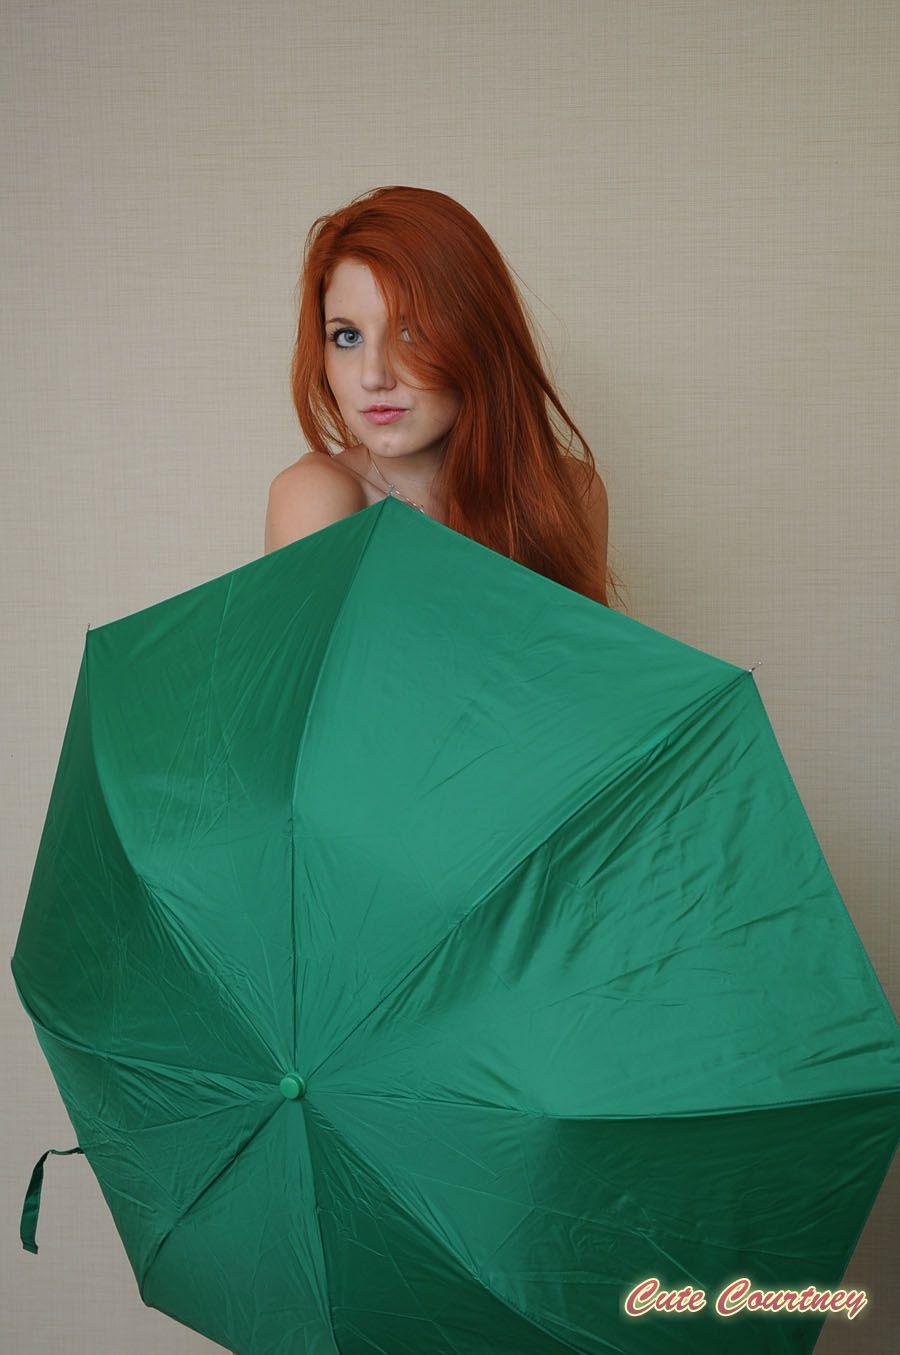 Fotos de la linda Courtney poniendose creativa con un paraguas
 #53899198